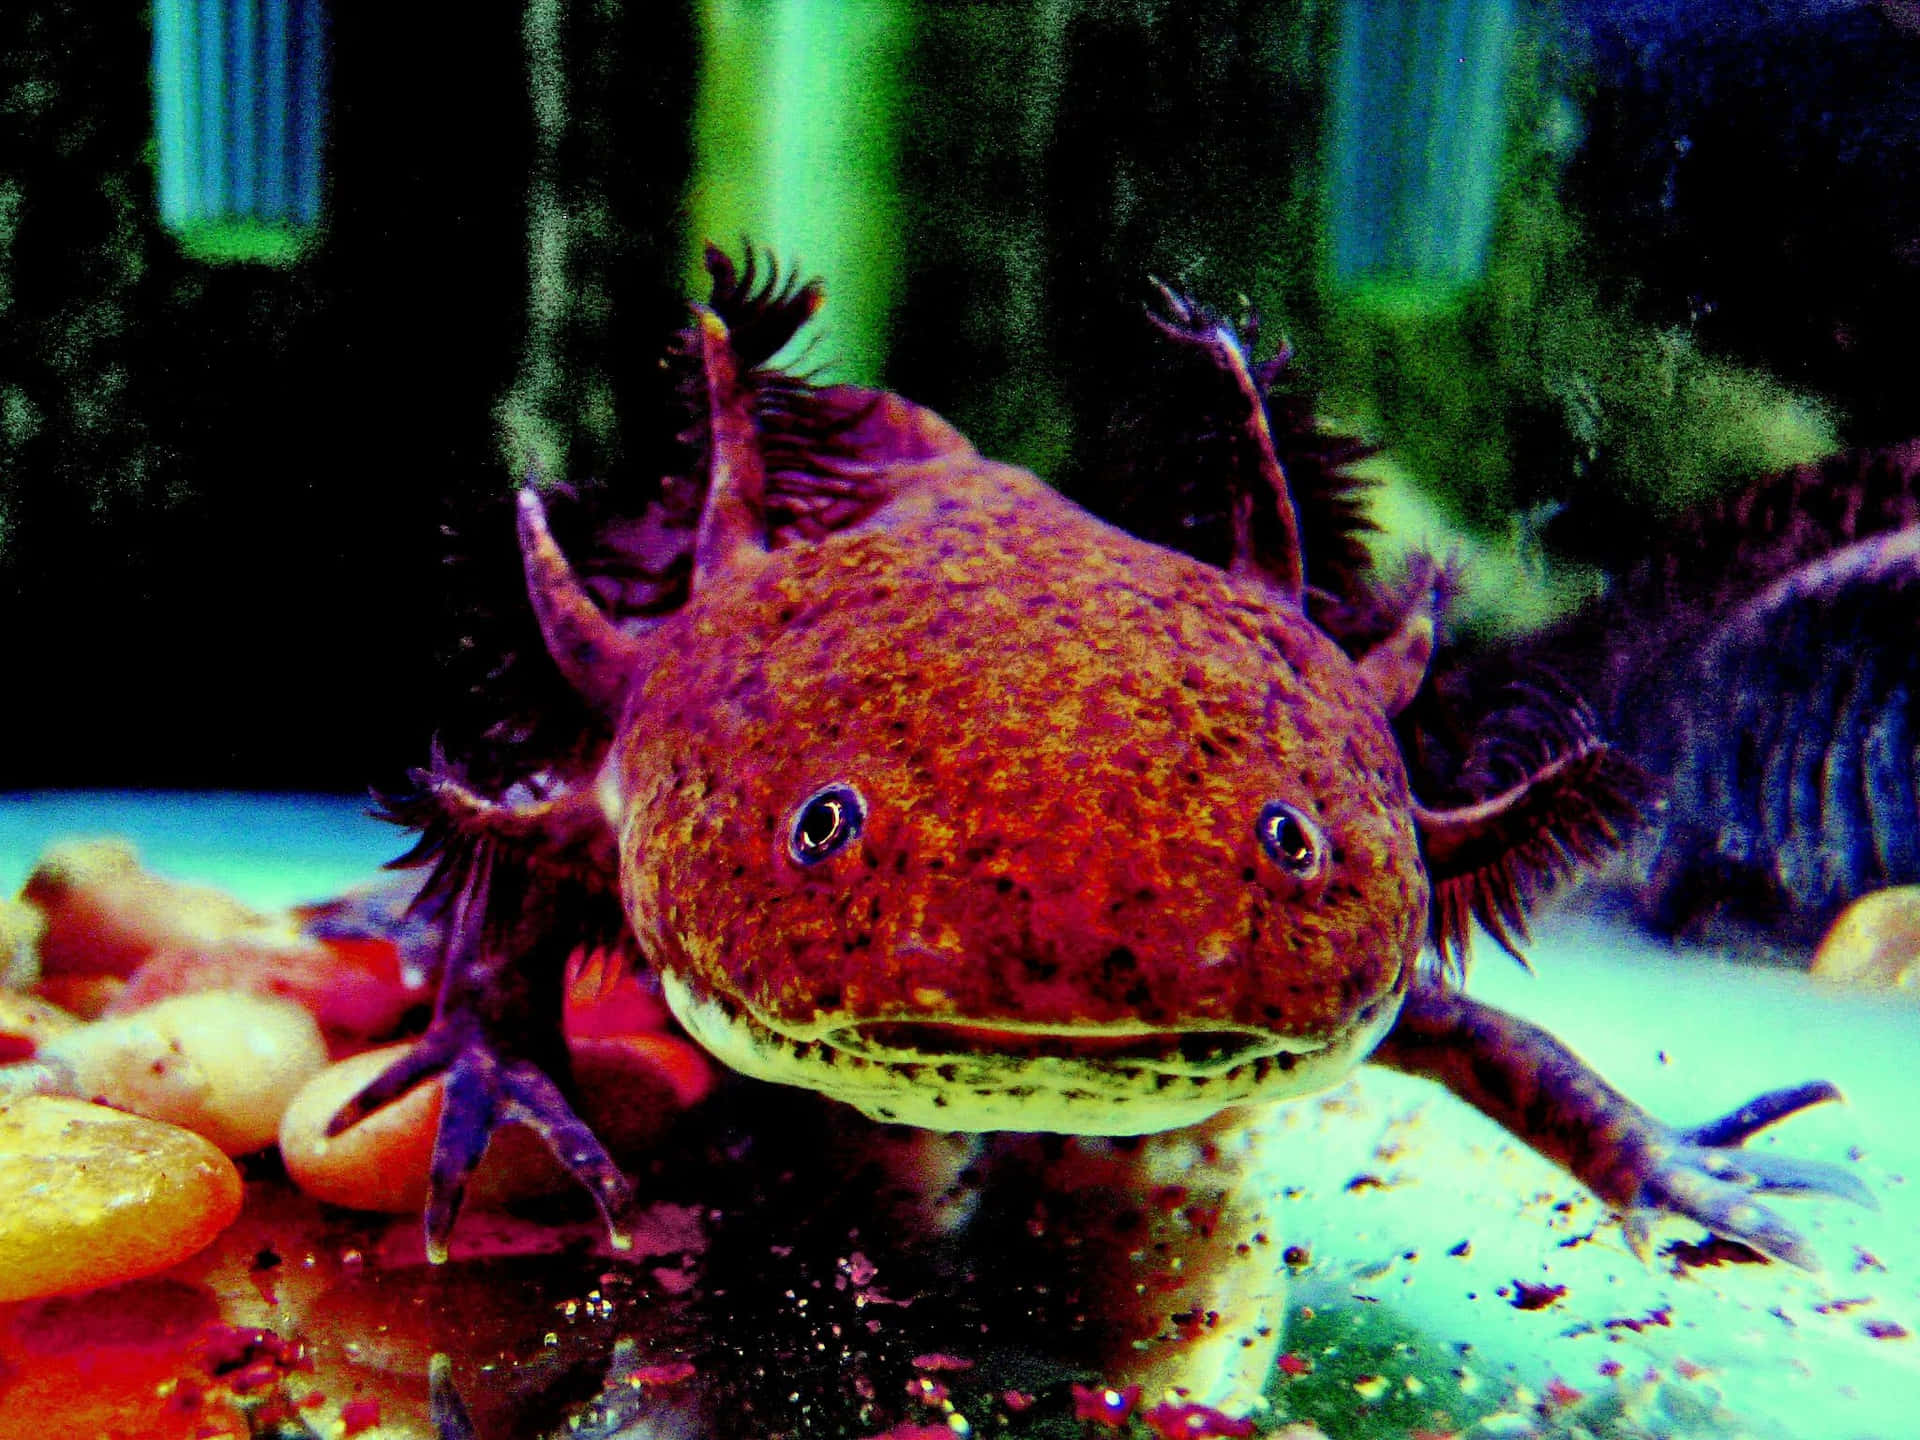 An Adorable Mexican Axolotl